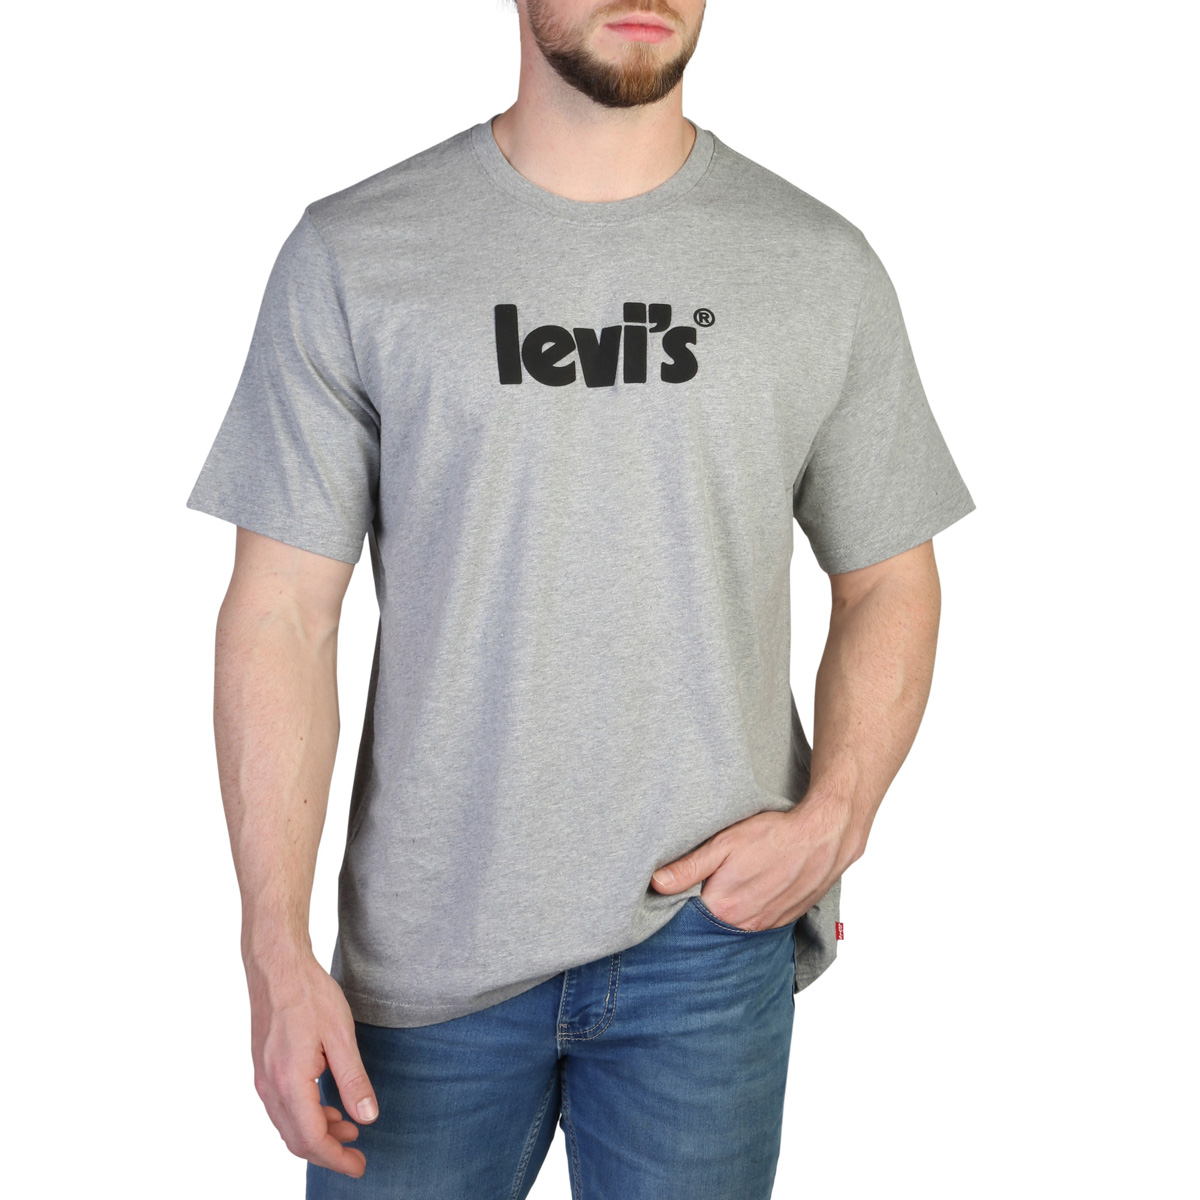 Levis - T-shirt homme